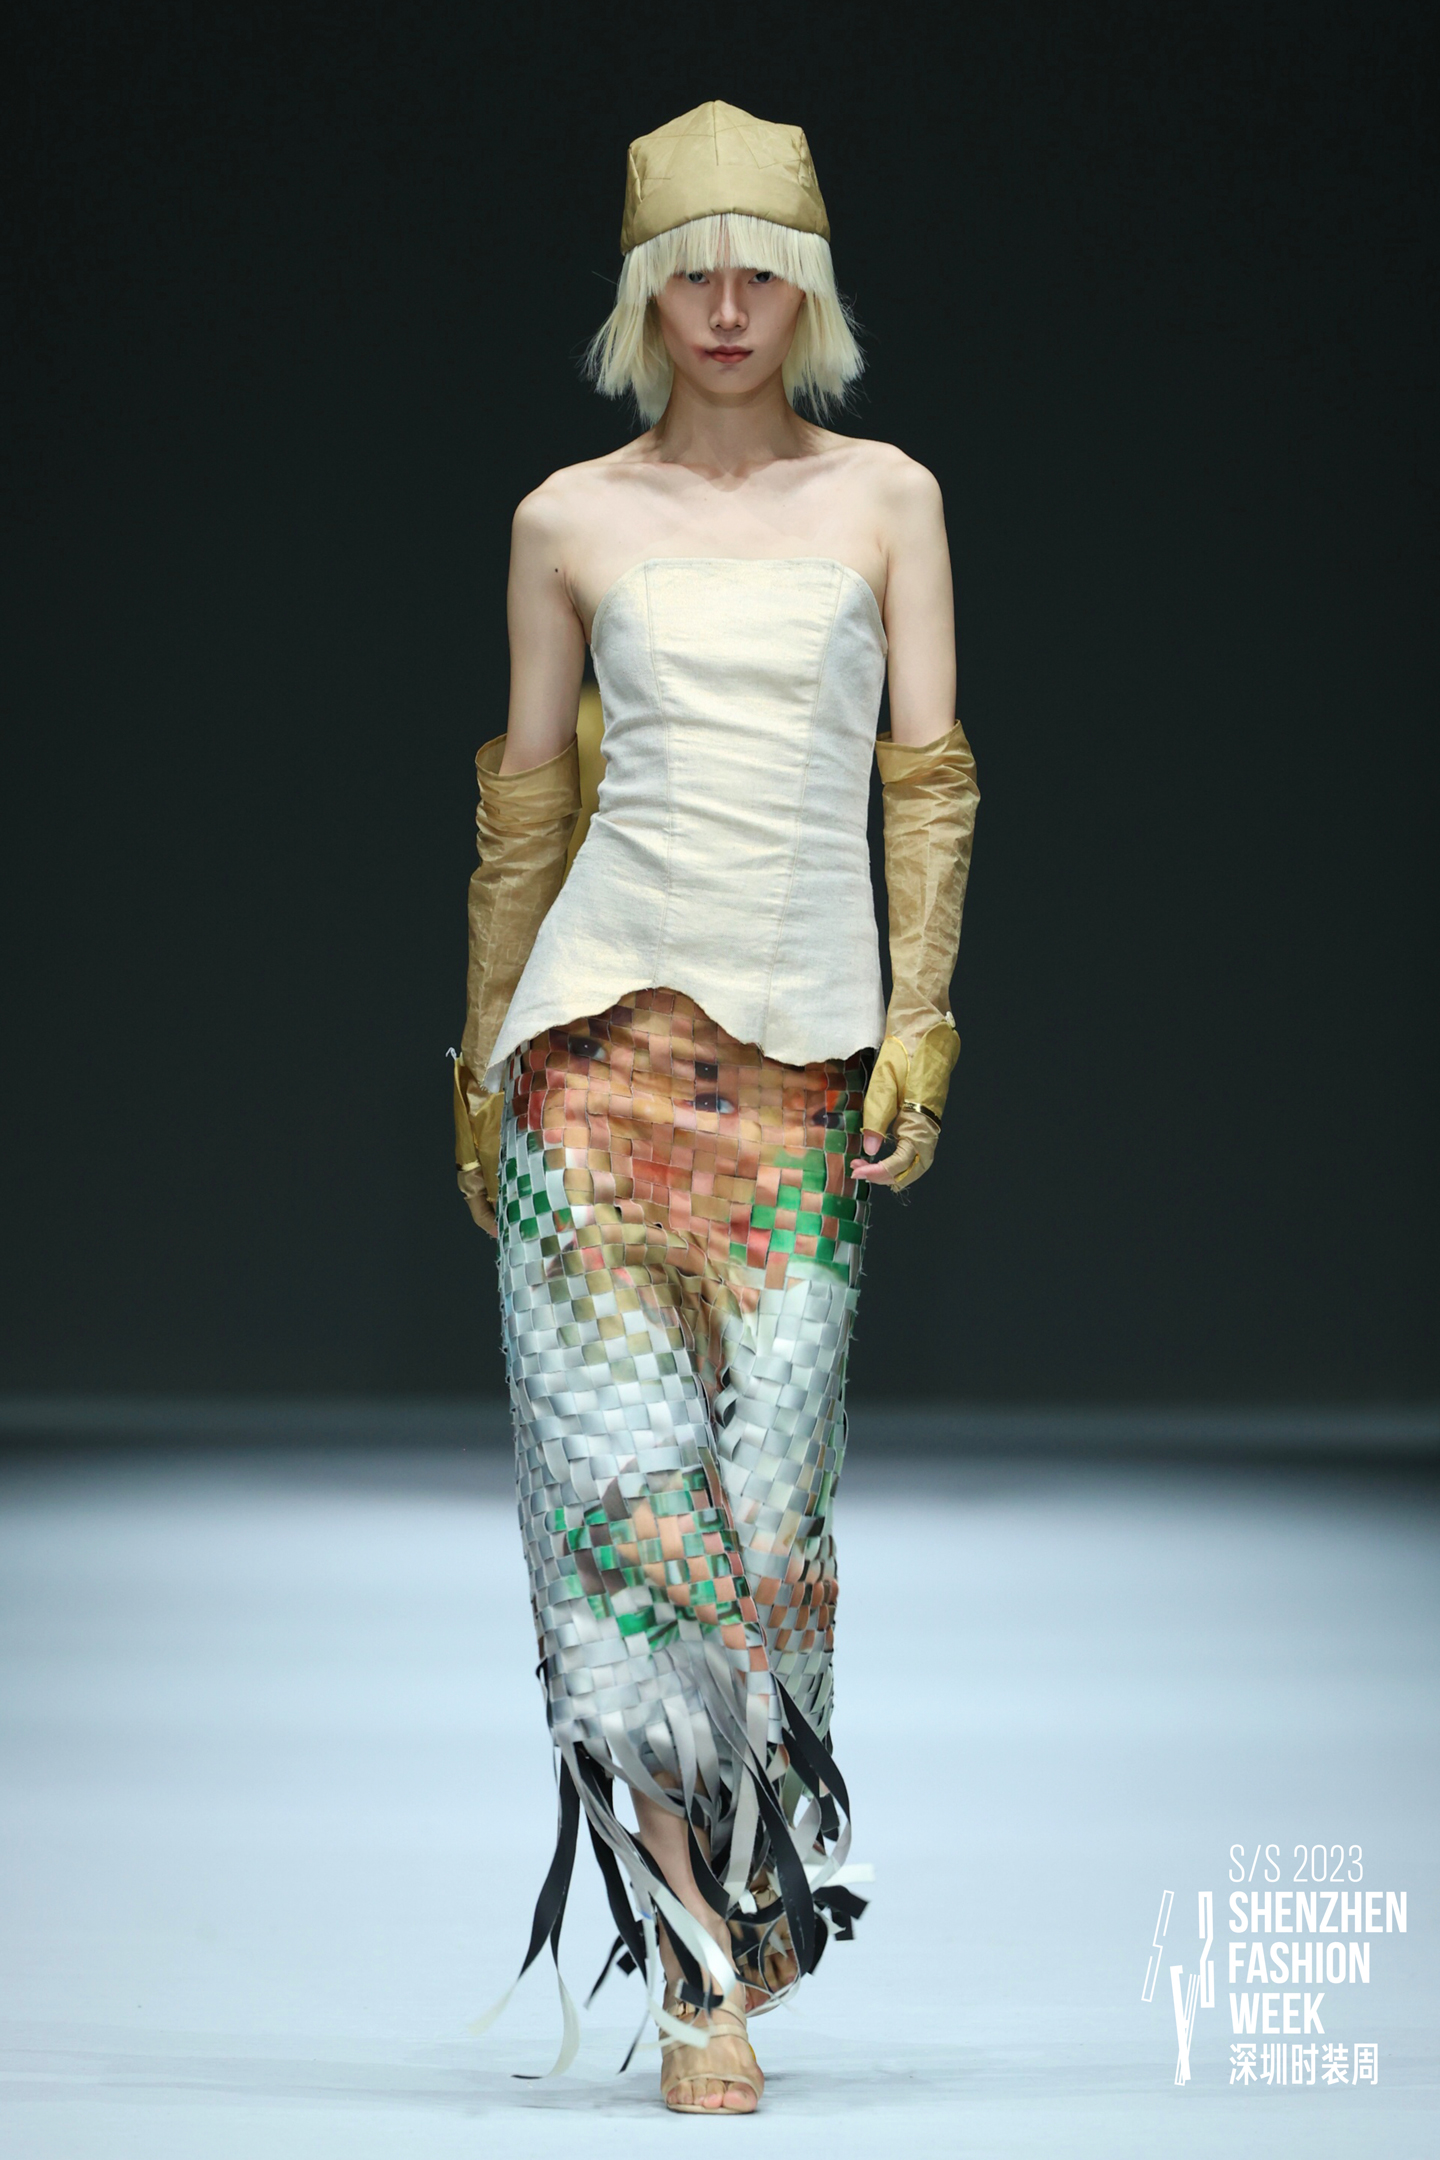 Look by Xinrui Huang, Fashion Design graduate at Istituto Marangoni Shenzhen